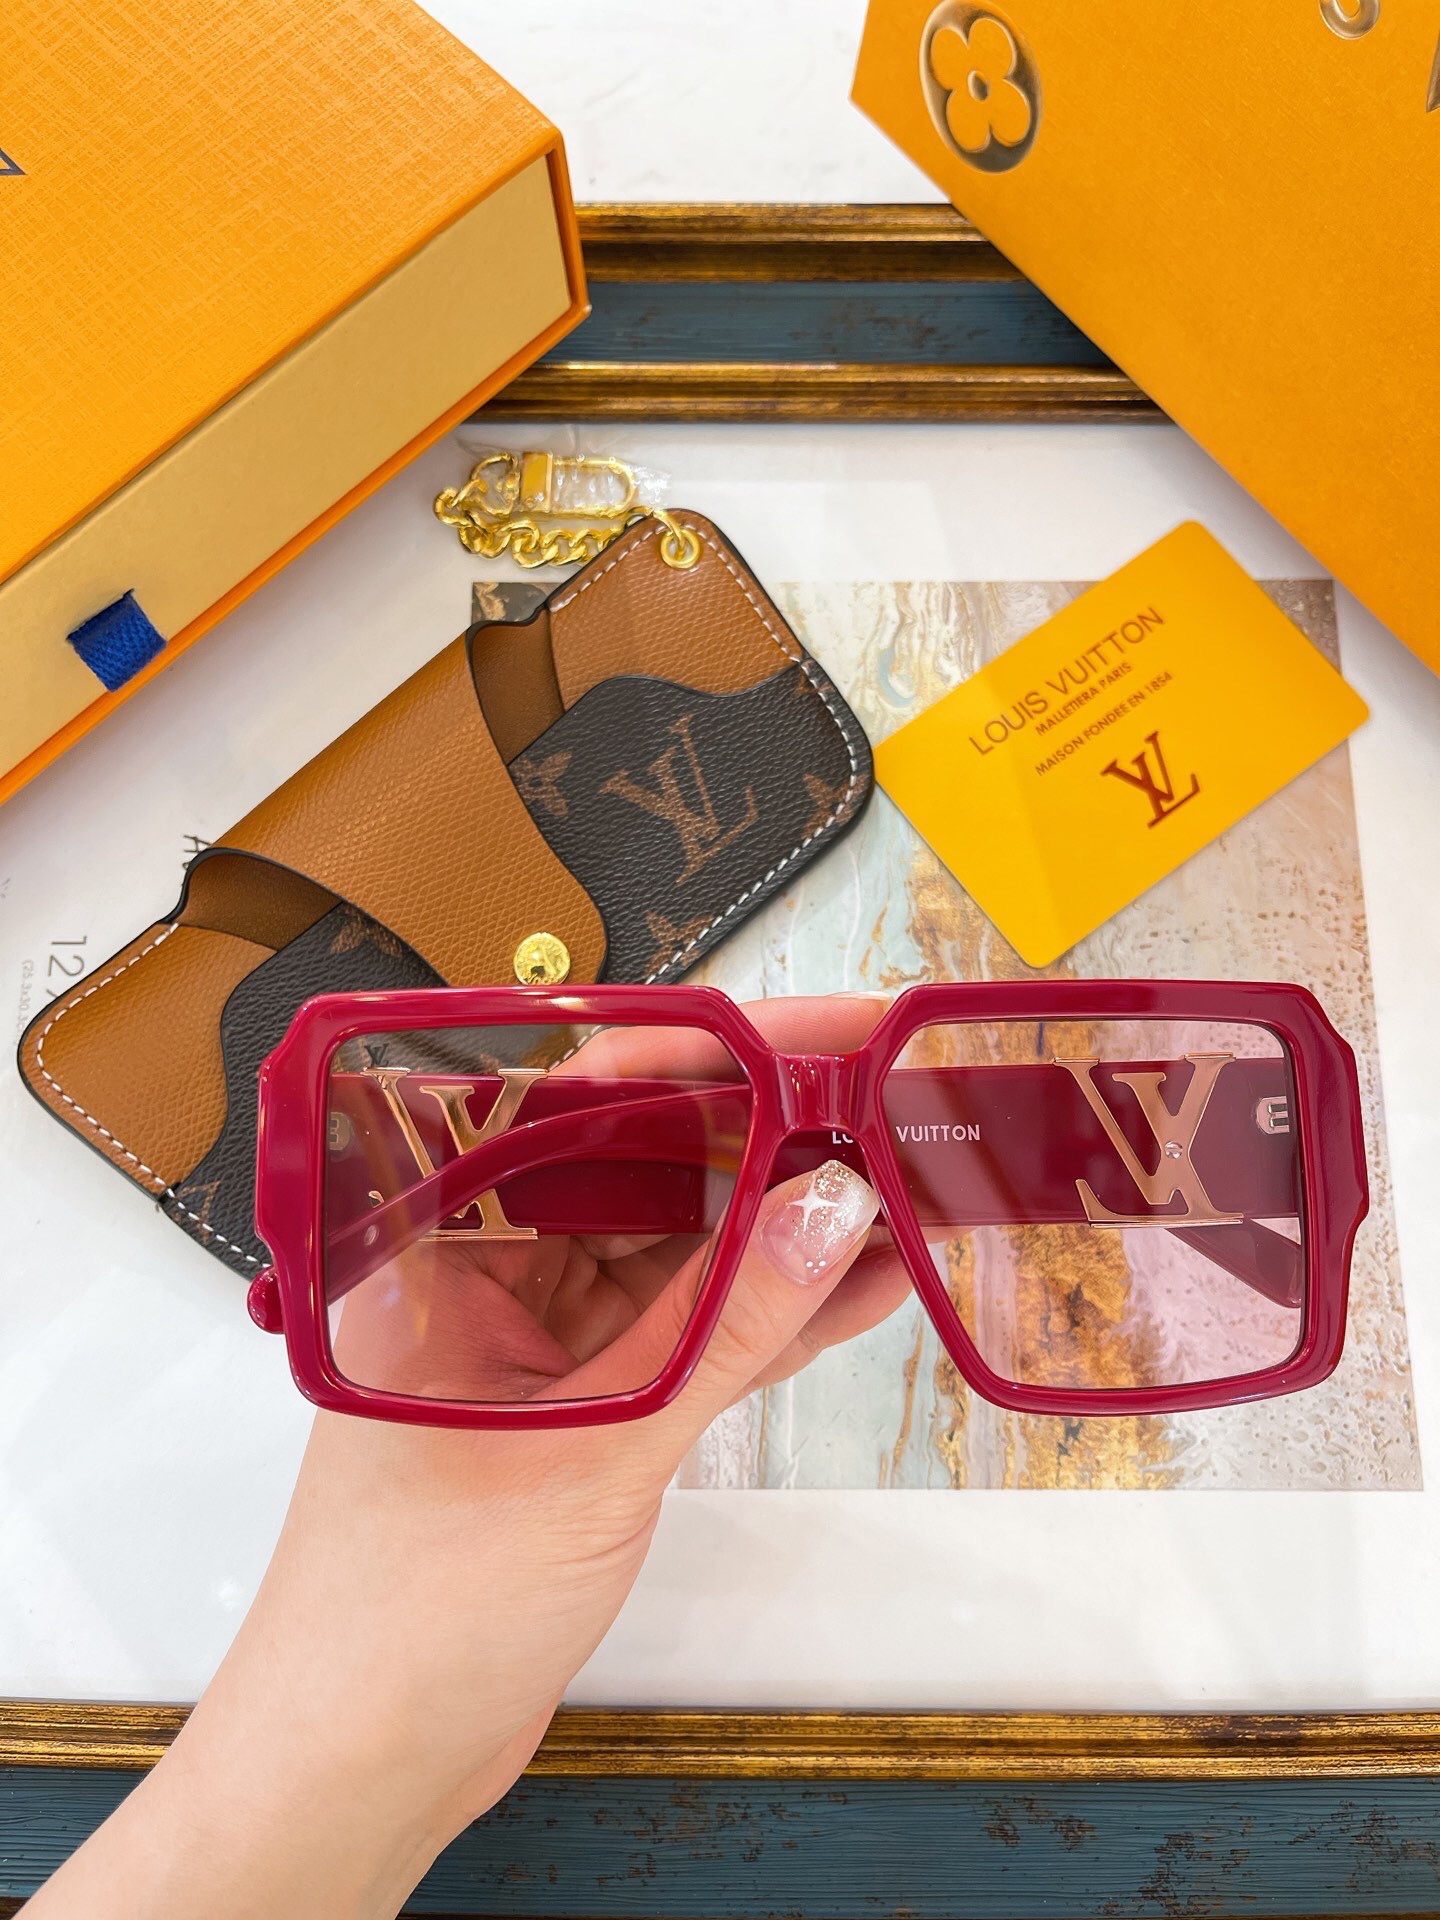 LC] Louis Vuitton LV 1.1 Millionaires Sunglasses Millionaire : r